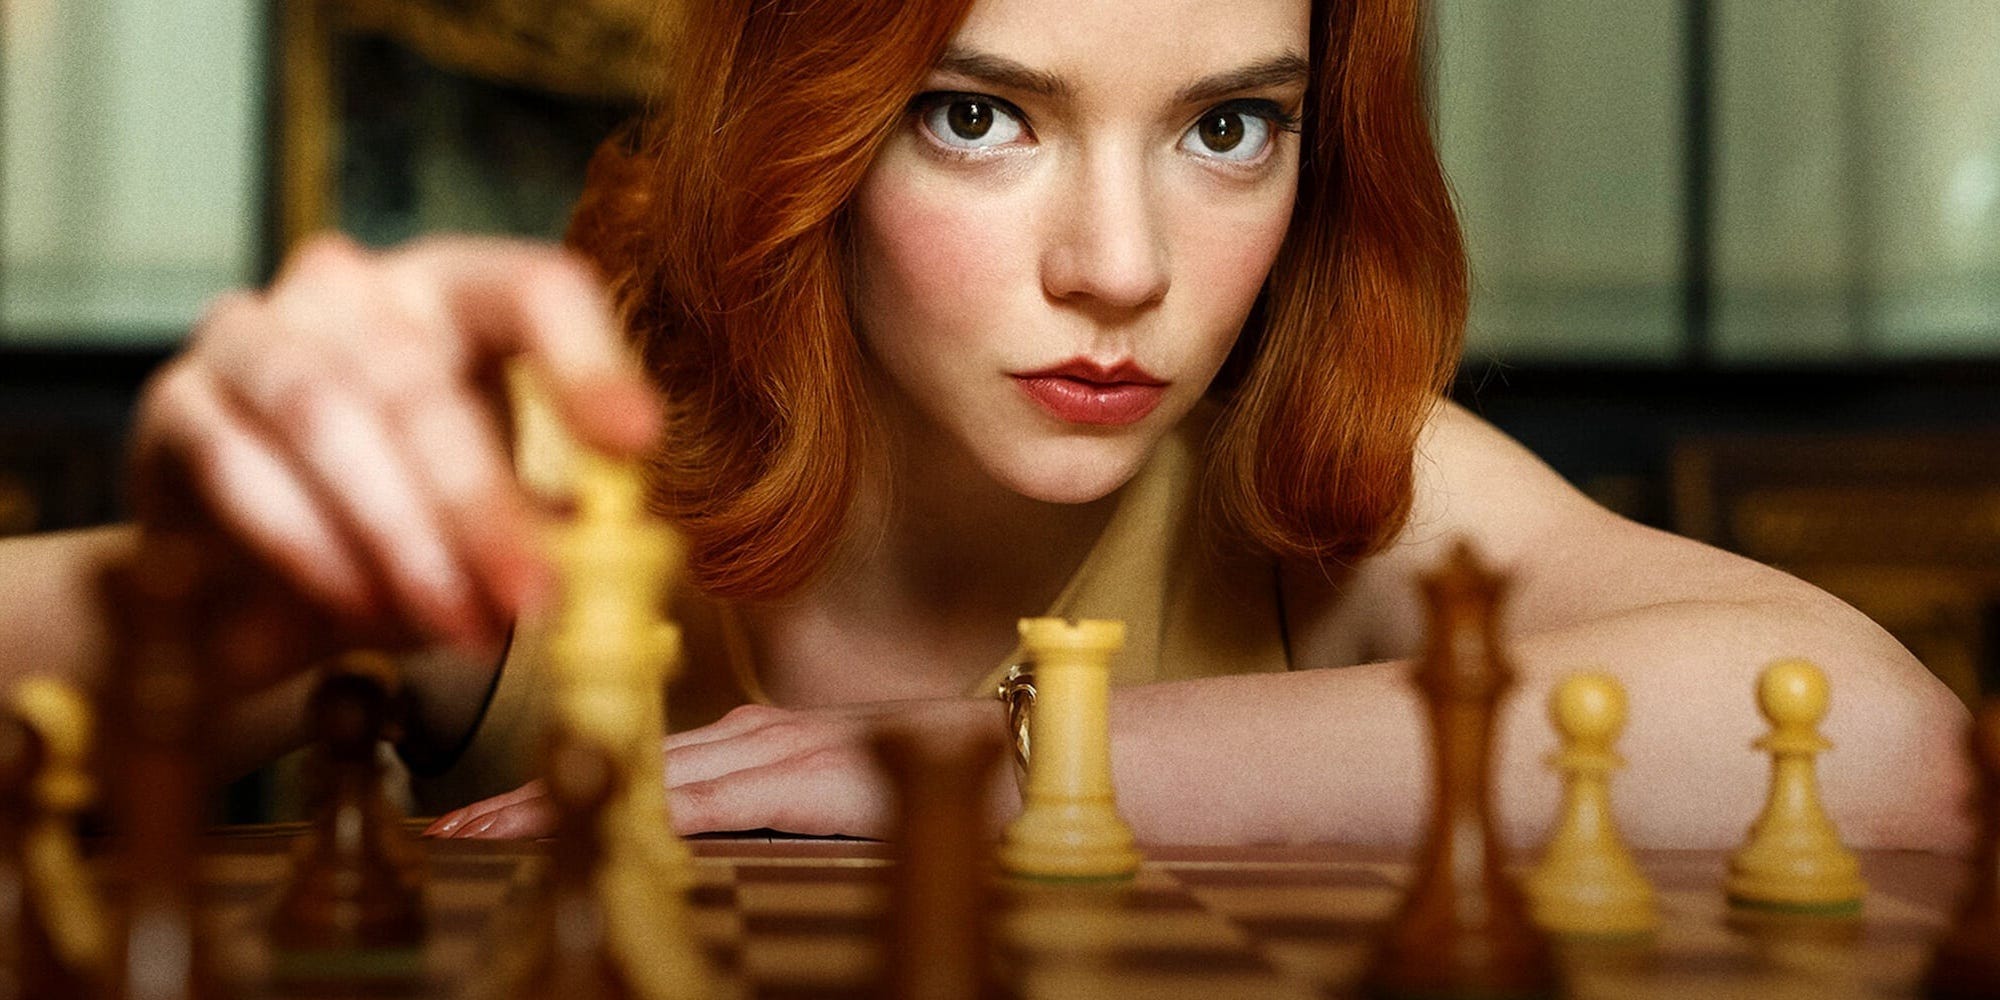 Chess Movies